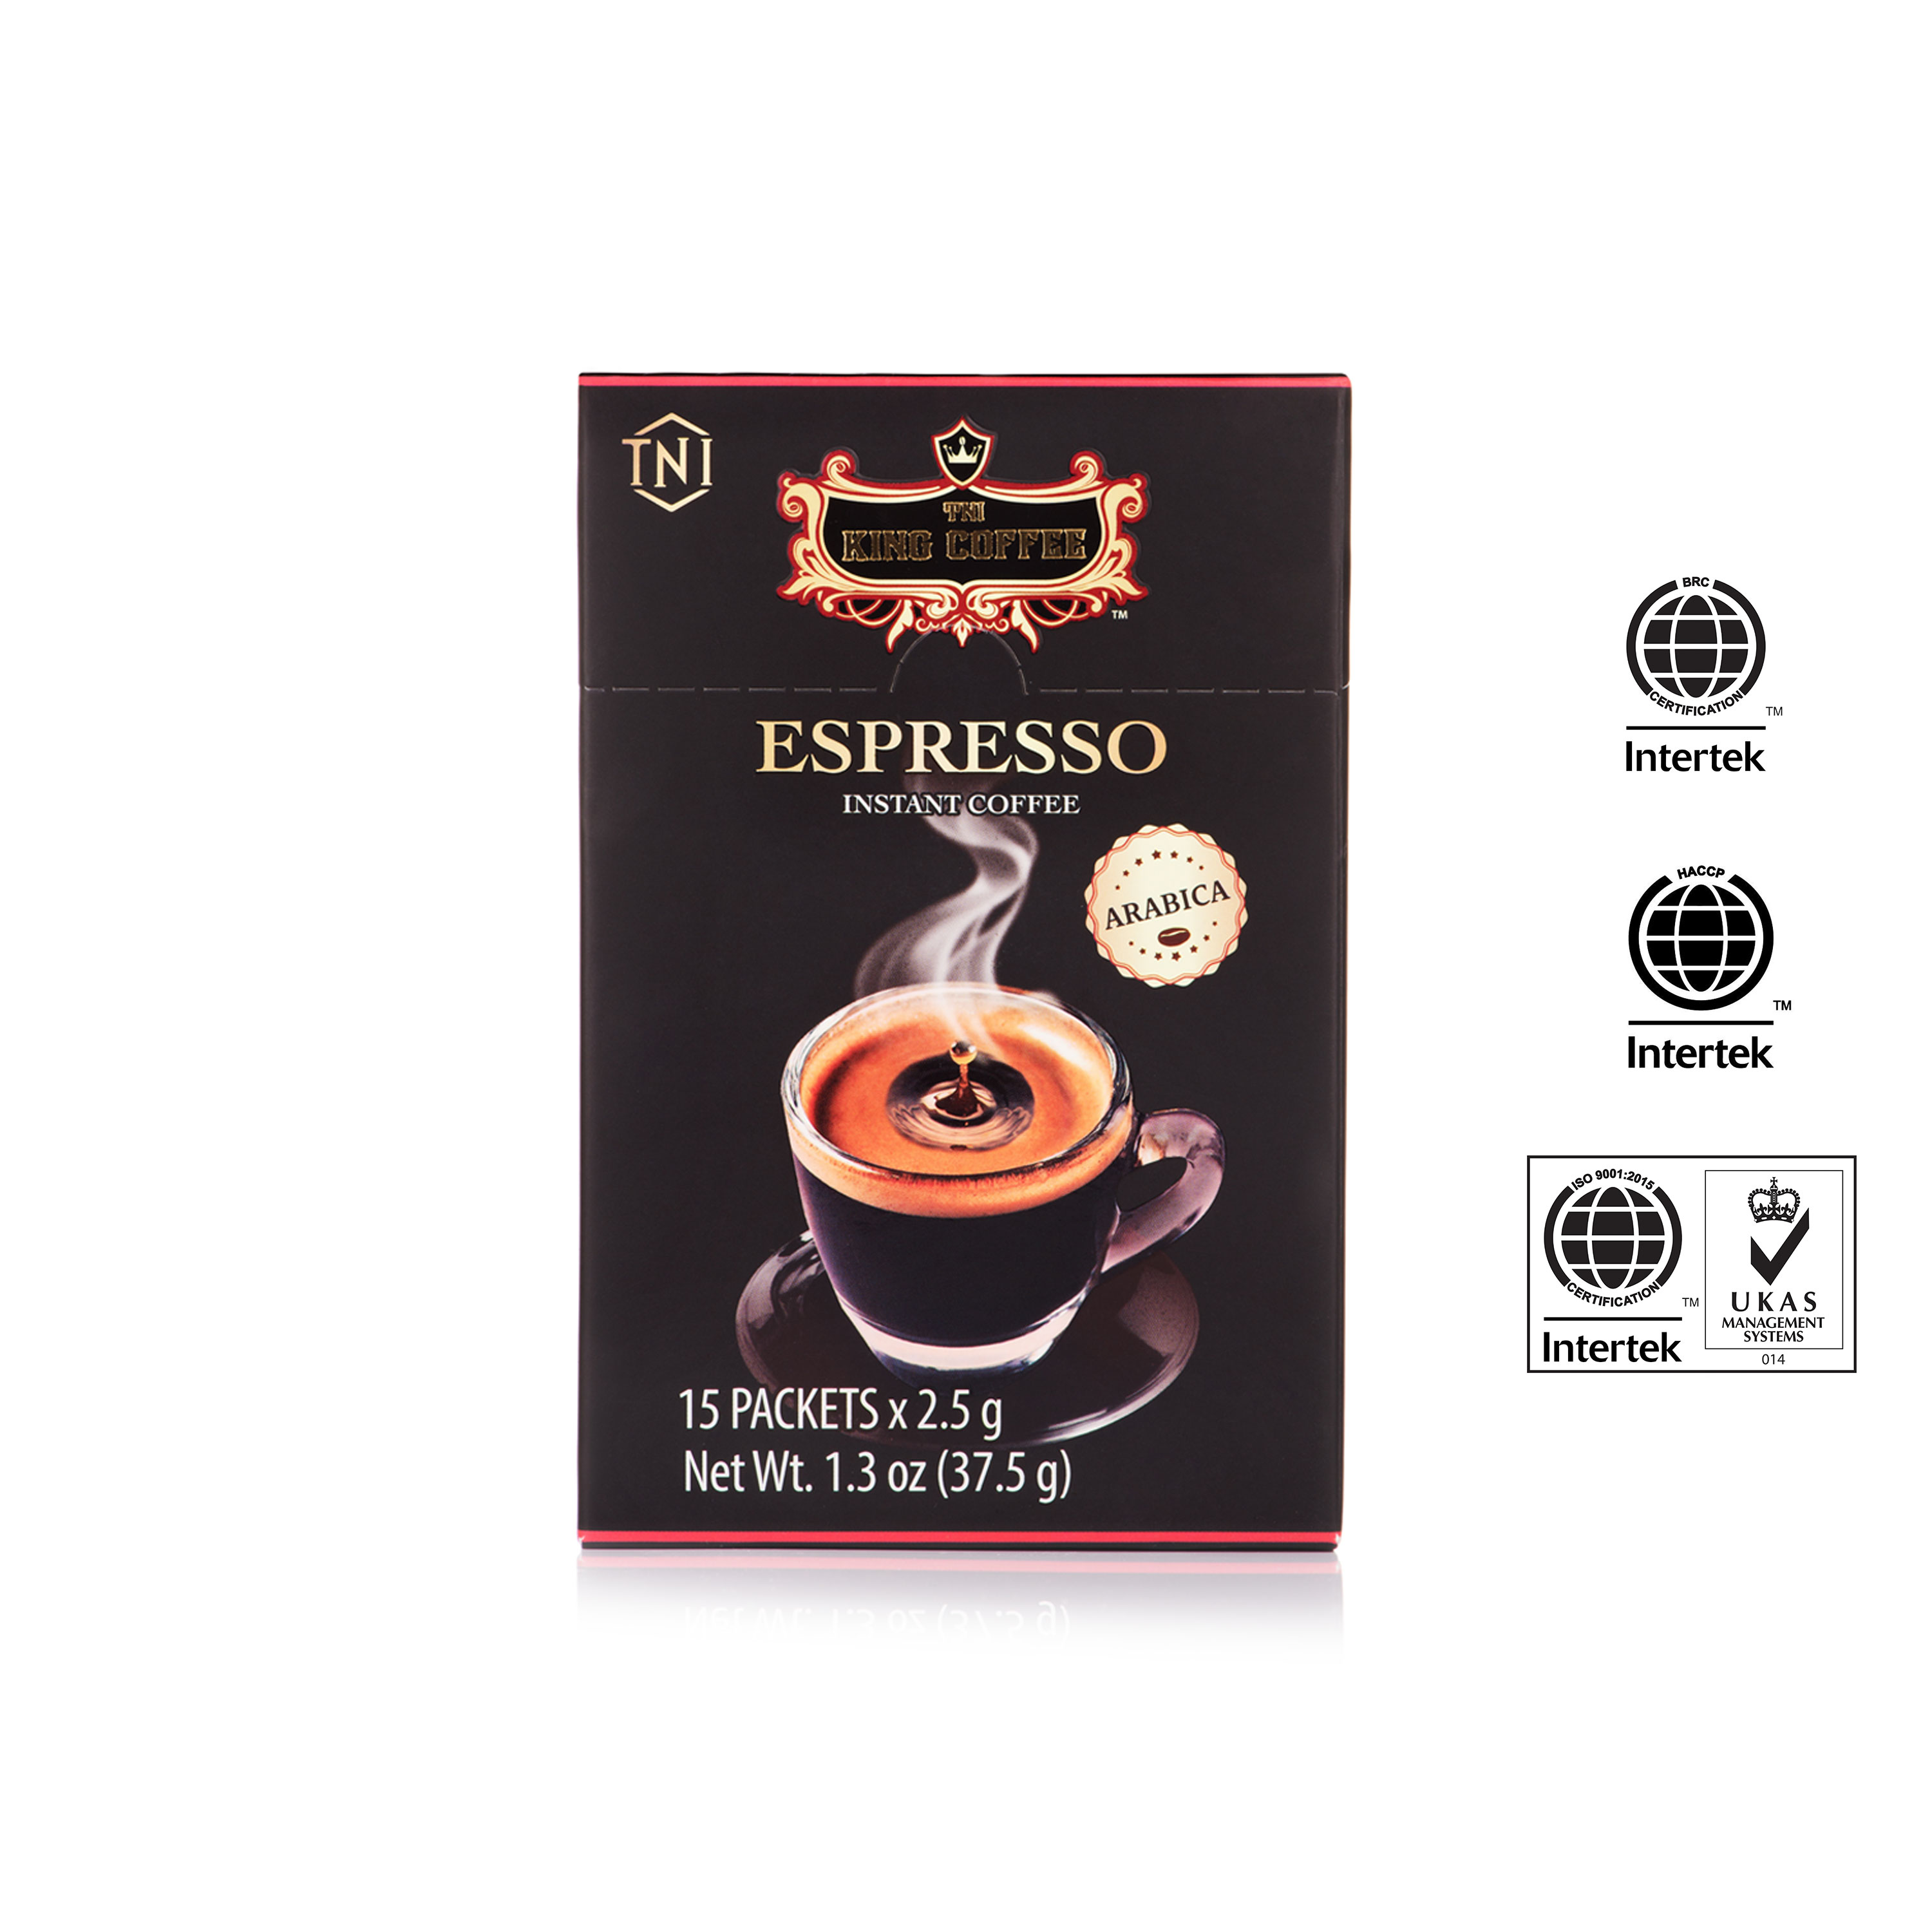 Cà Phê Đen Hòa Tan Espresso KING COFFEE - Hộp 15 gói x 2.5g